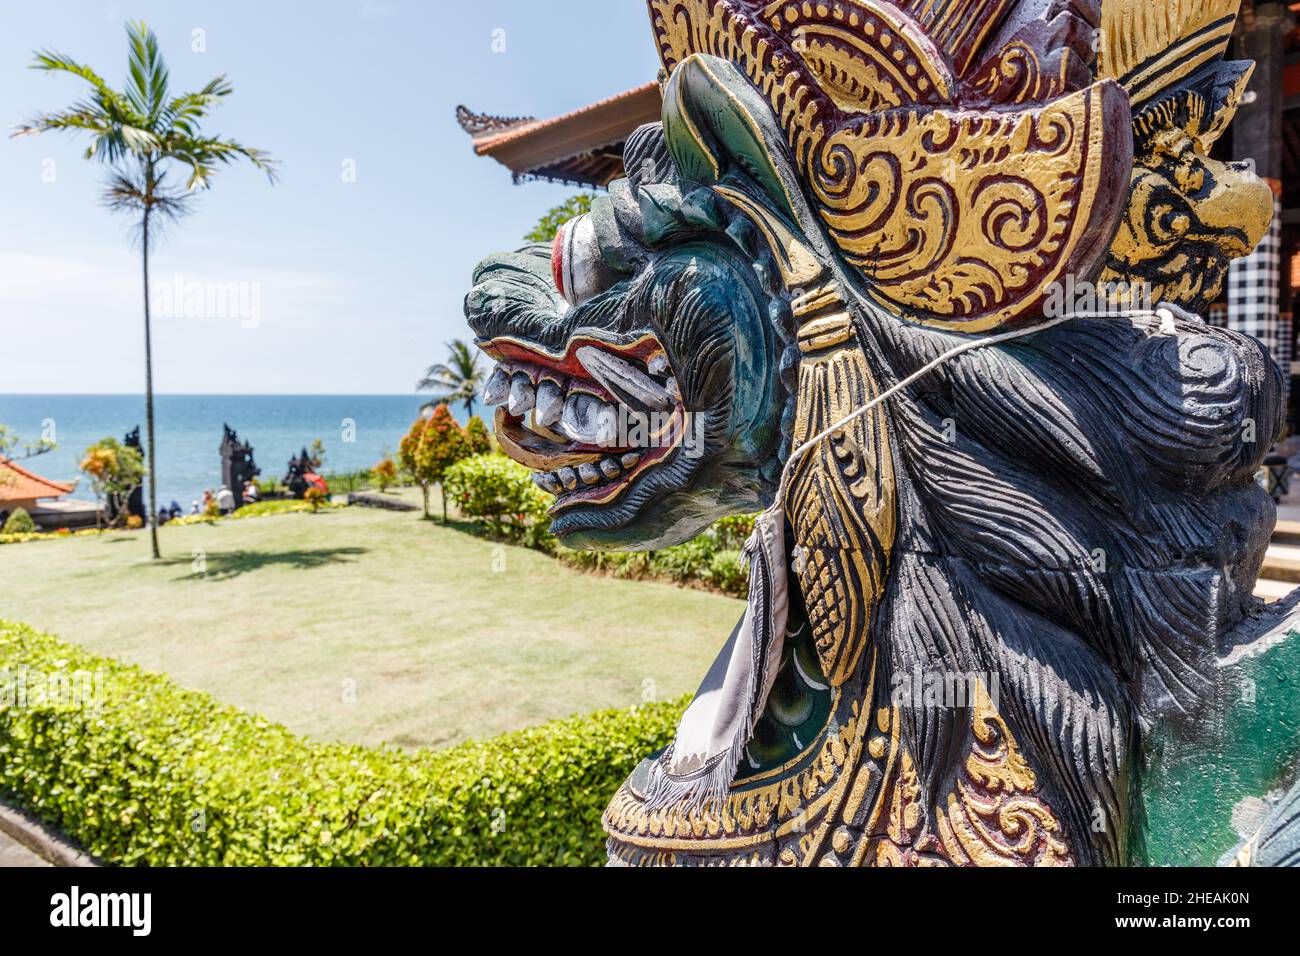 Statua custode del drago (naga) presso il tempio del mare indù balinese (pura Segara) Tanah Lot, Tabanan, Bali, Indonesia. Foto Stock